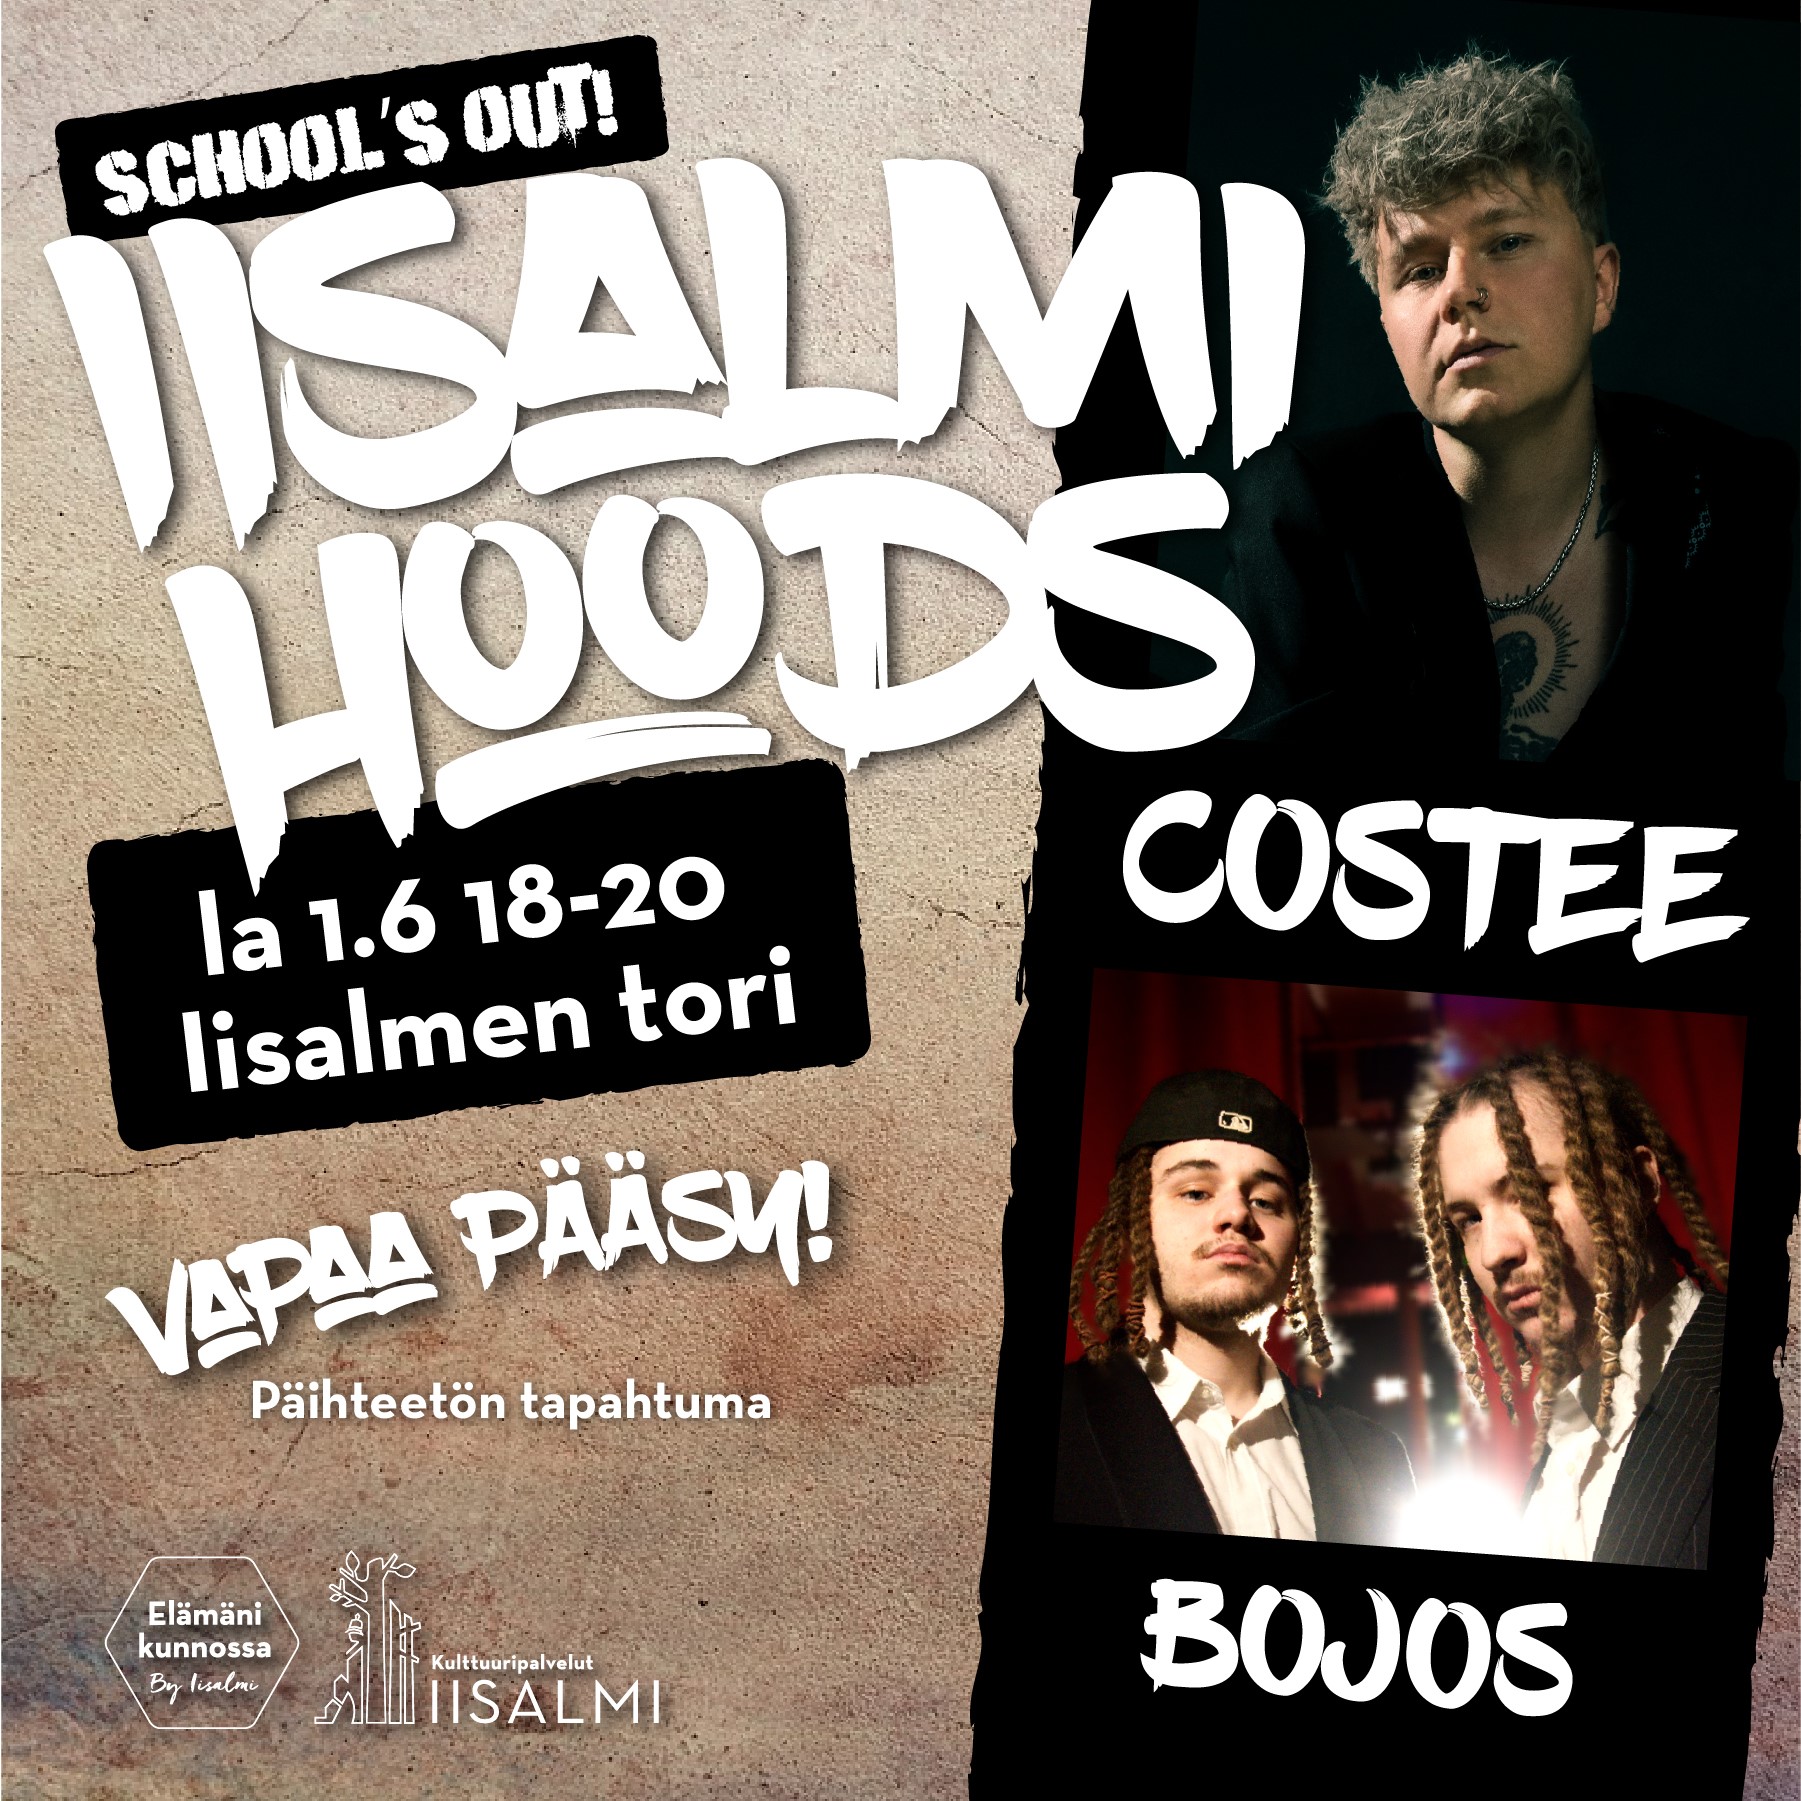 Iisalmi Hoods mainos jossa laulaja costeen kuva sekä lämppäri bojoksen kuva